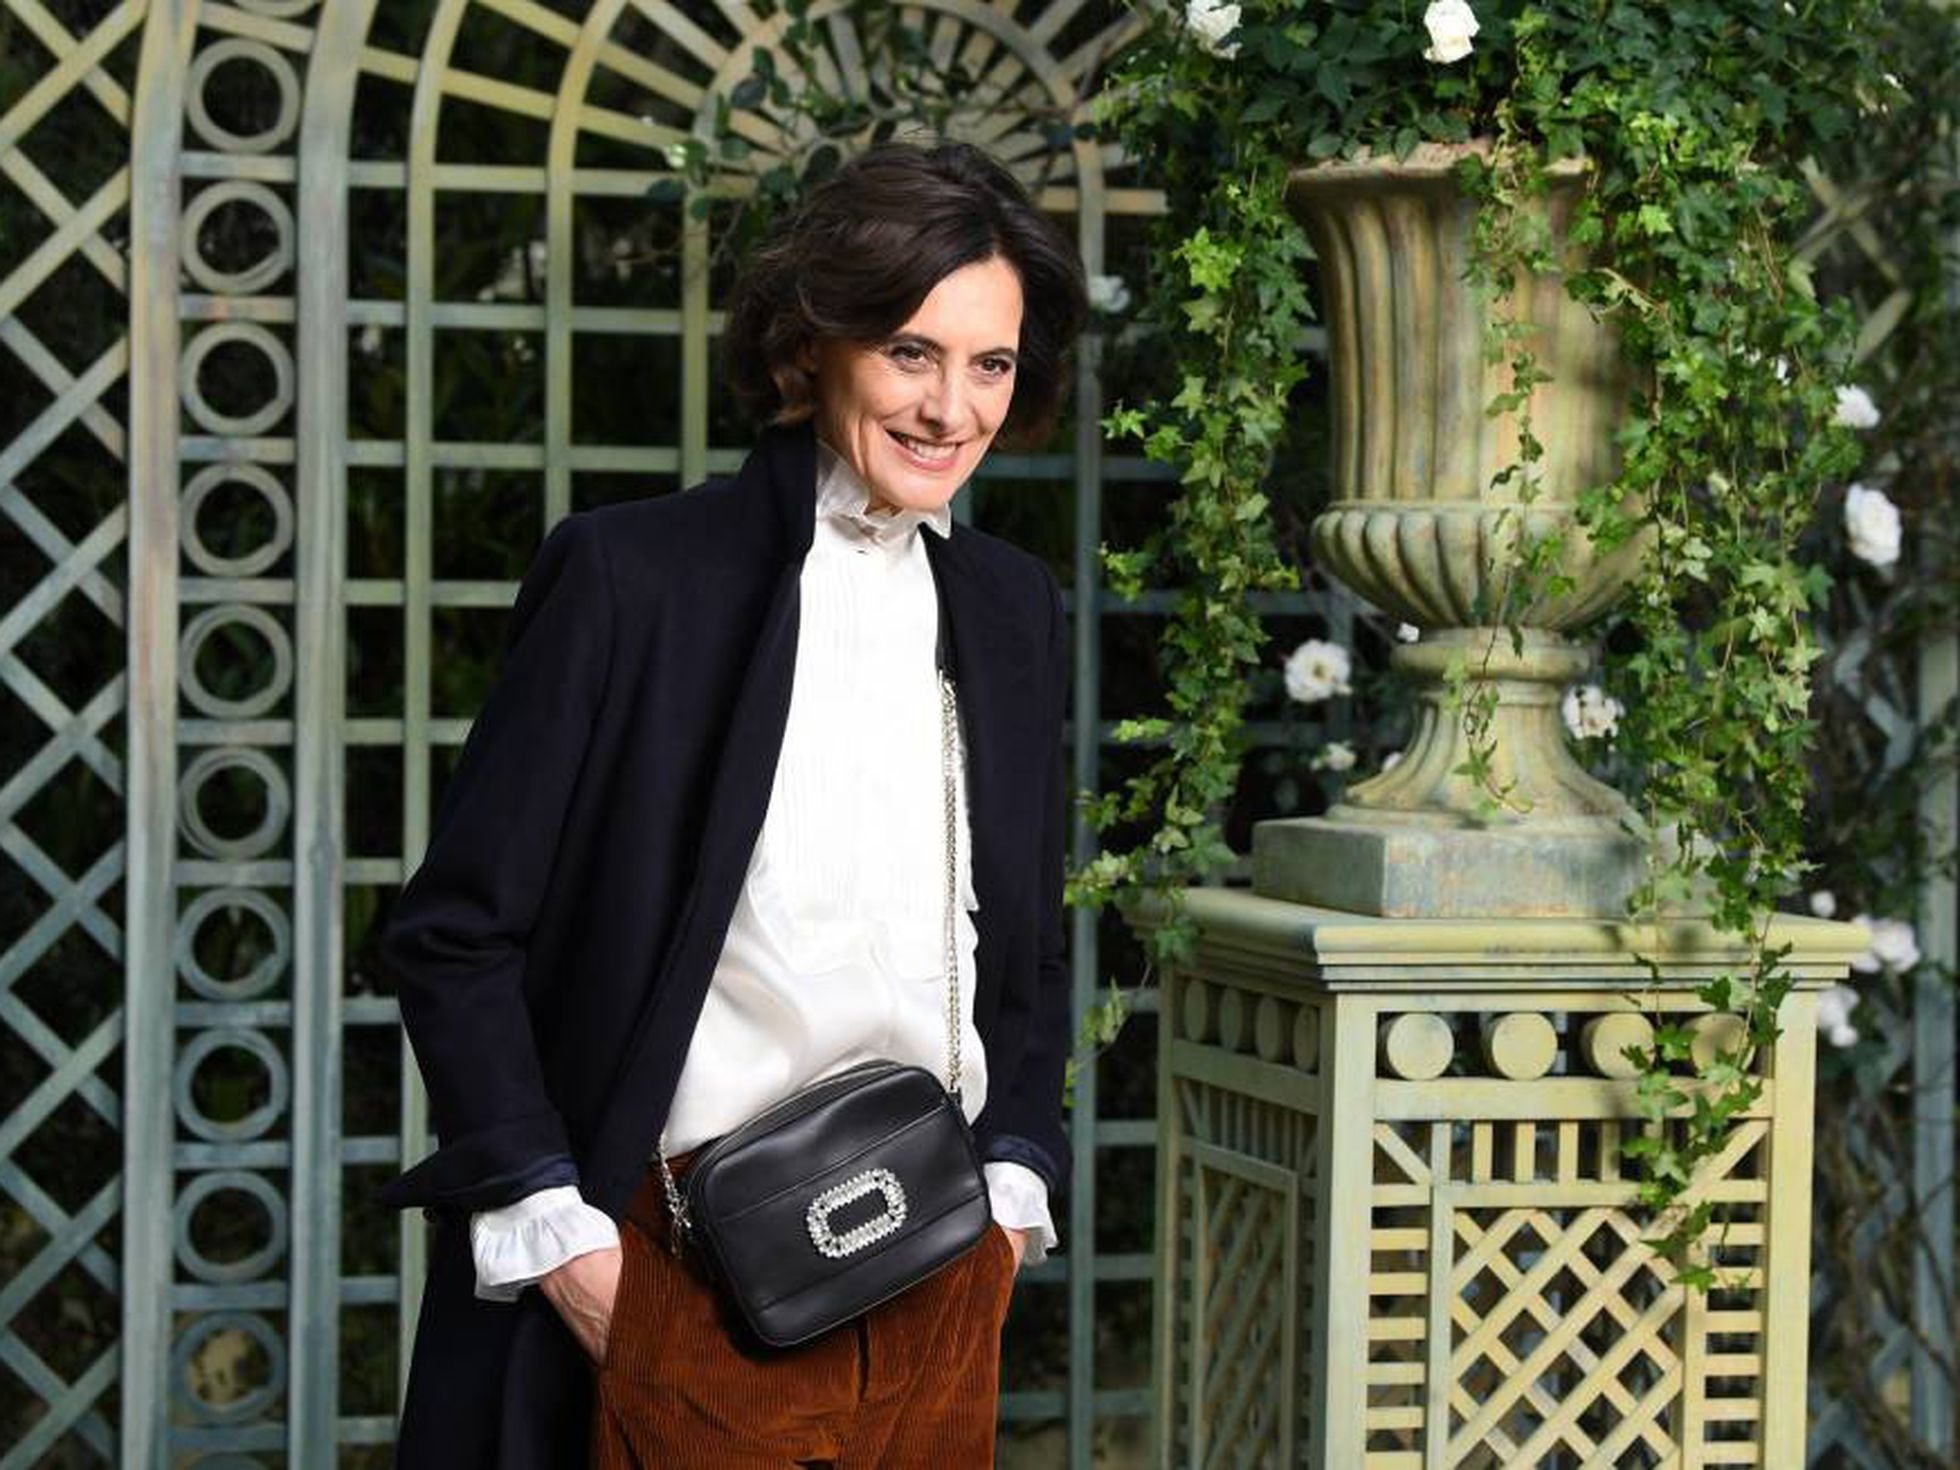 Los hombres parisinos son los nuevos iconos de estilo | Estilo | EL PAÍS